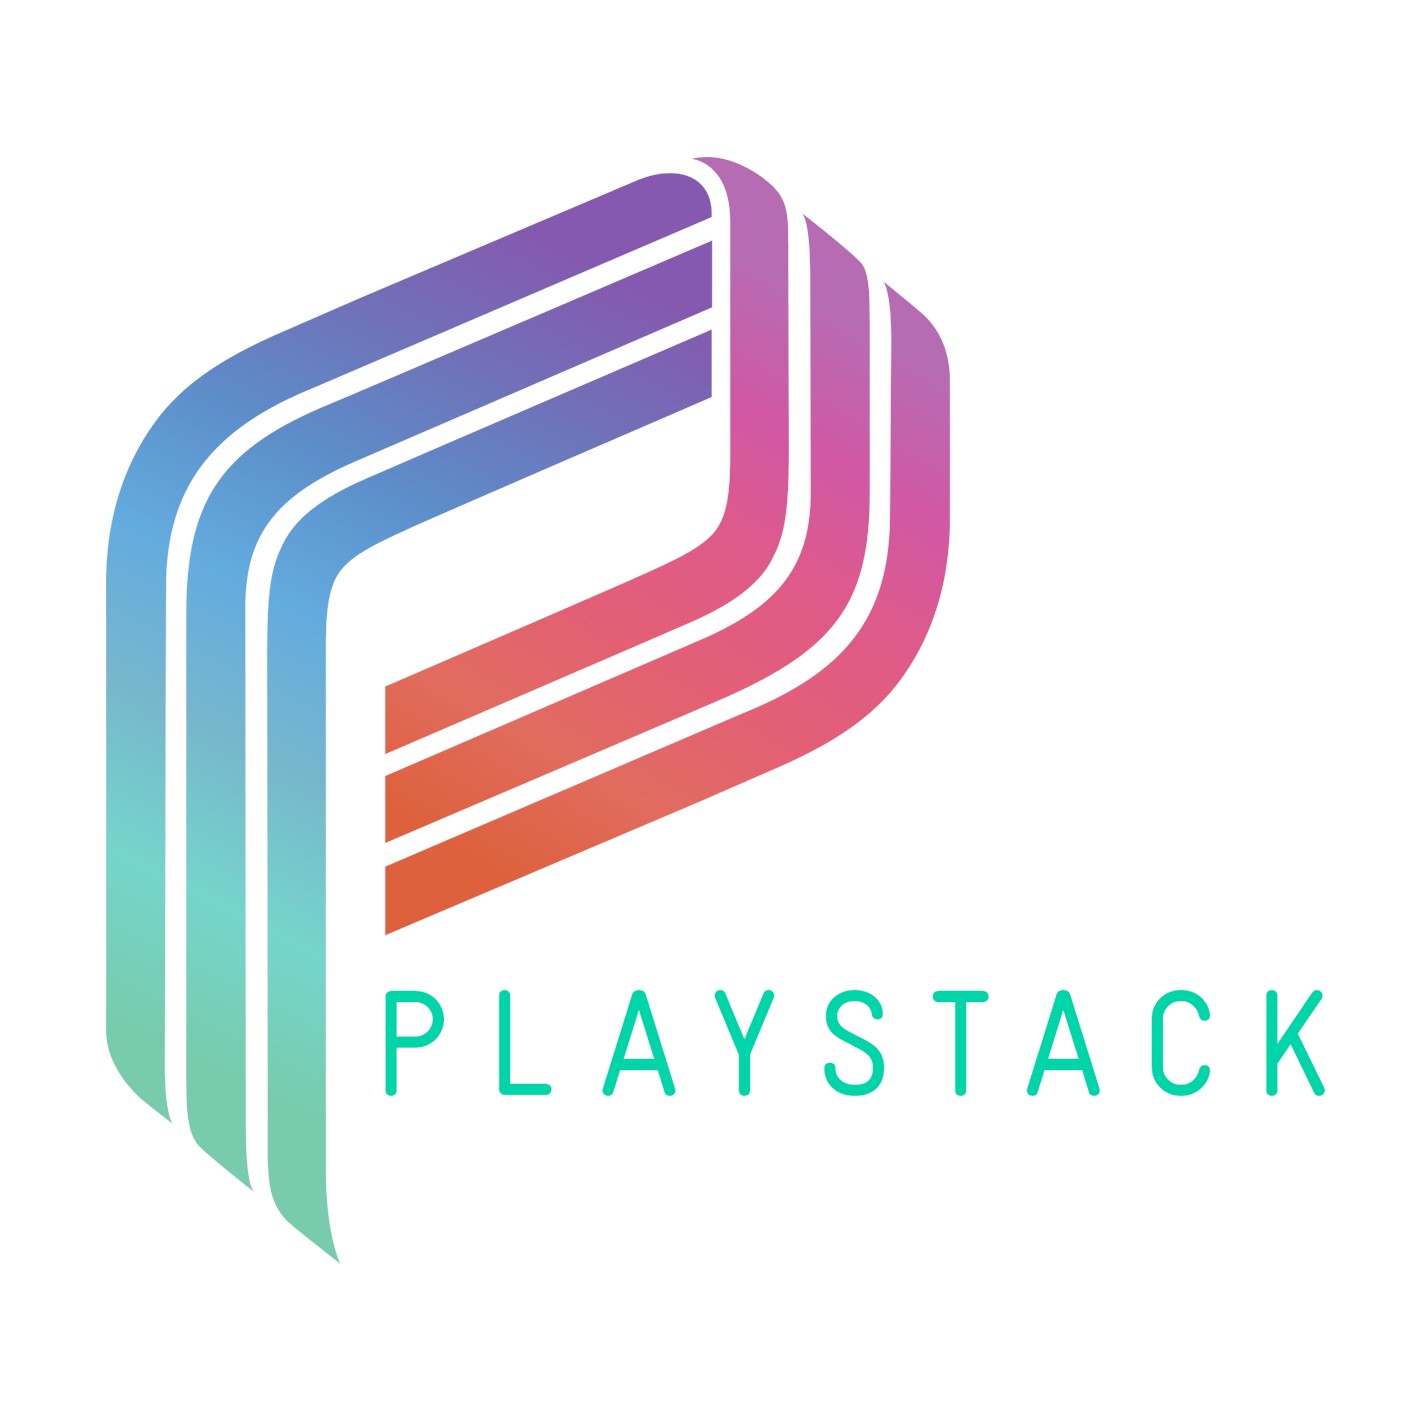 Playstack Platform Contract